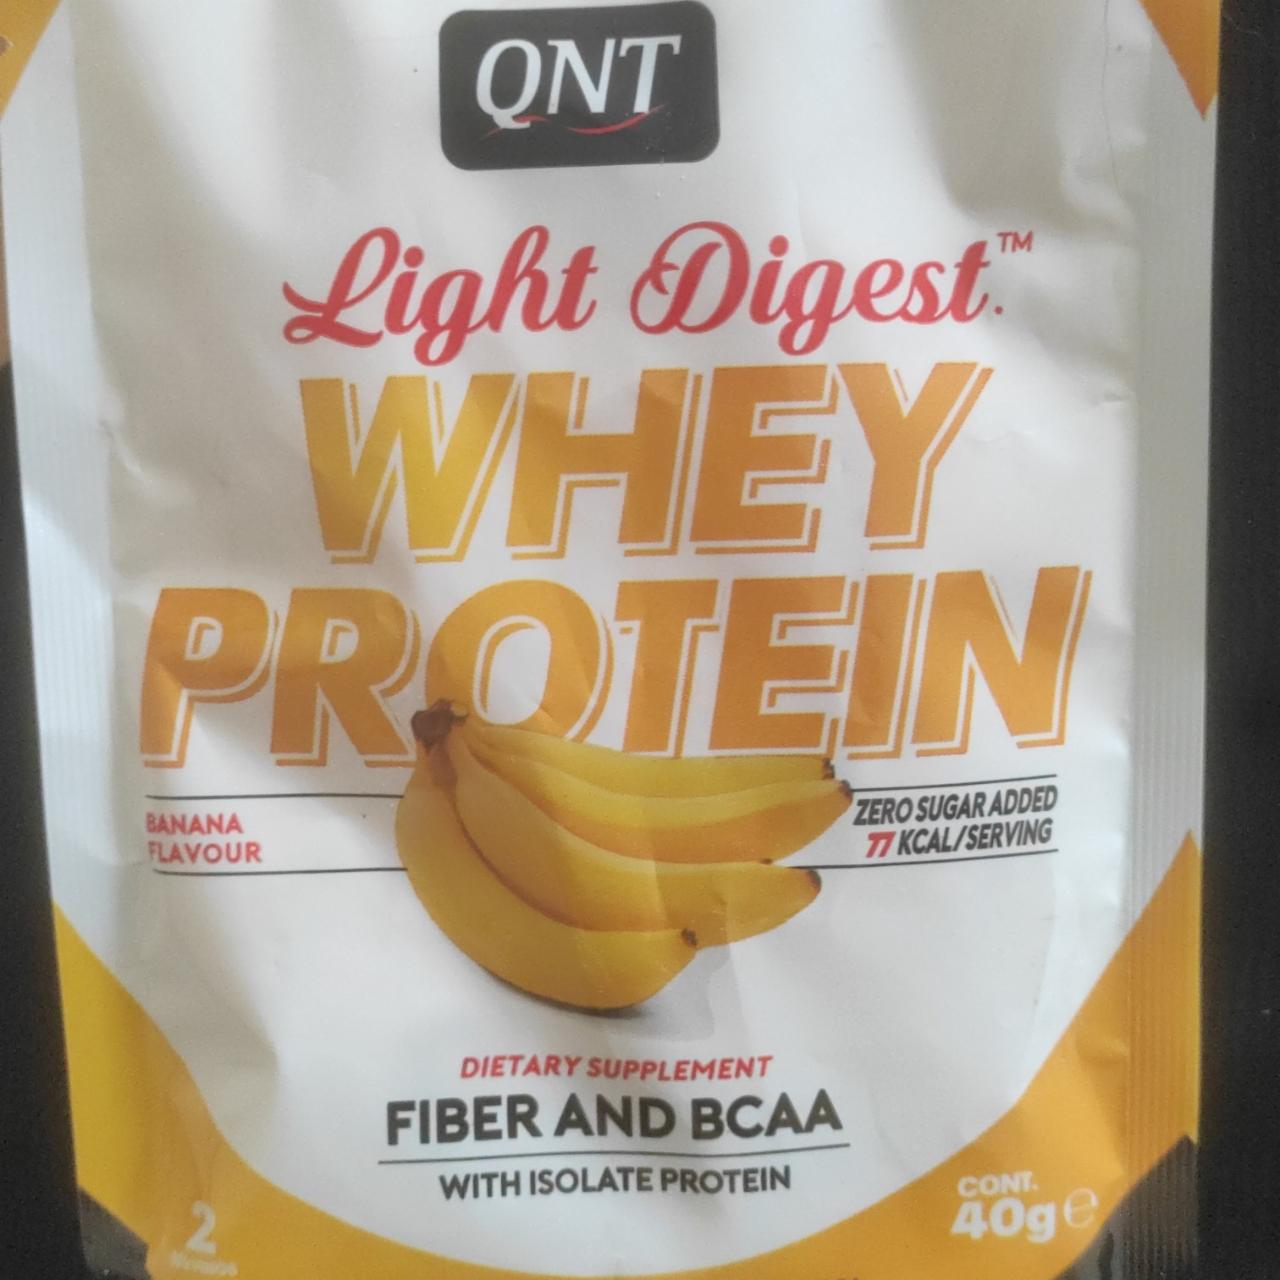 Zdjęcia - Light Digest Whey Protein Banana QNT